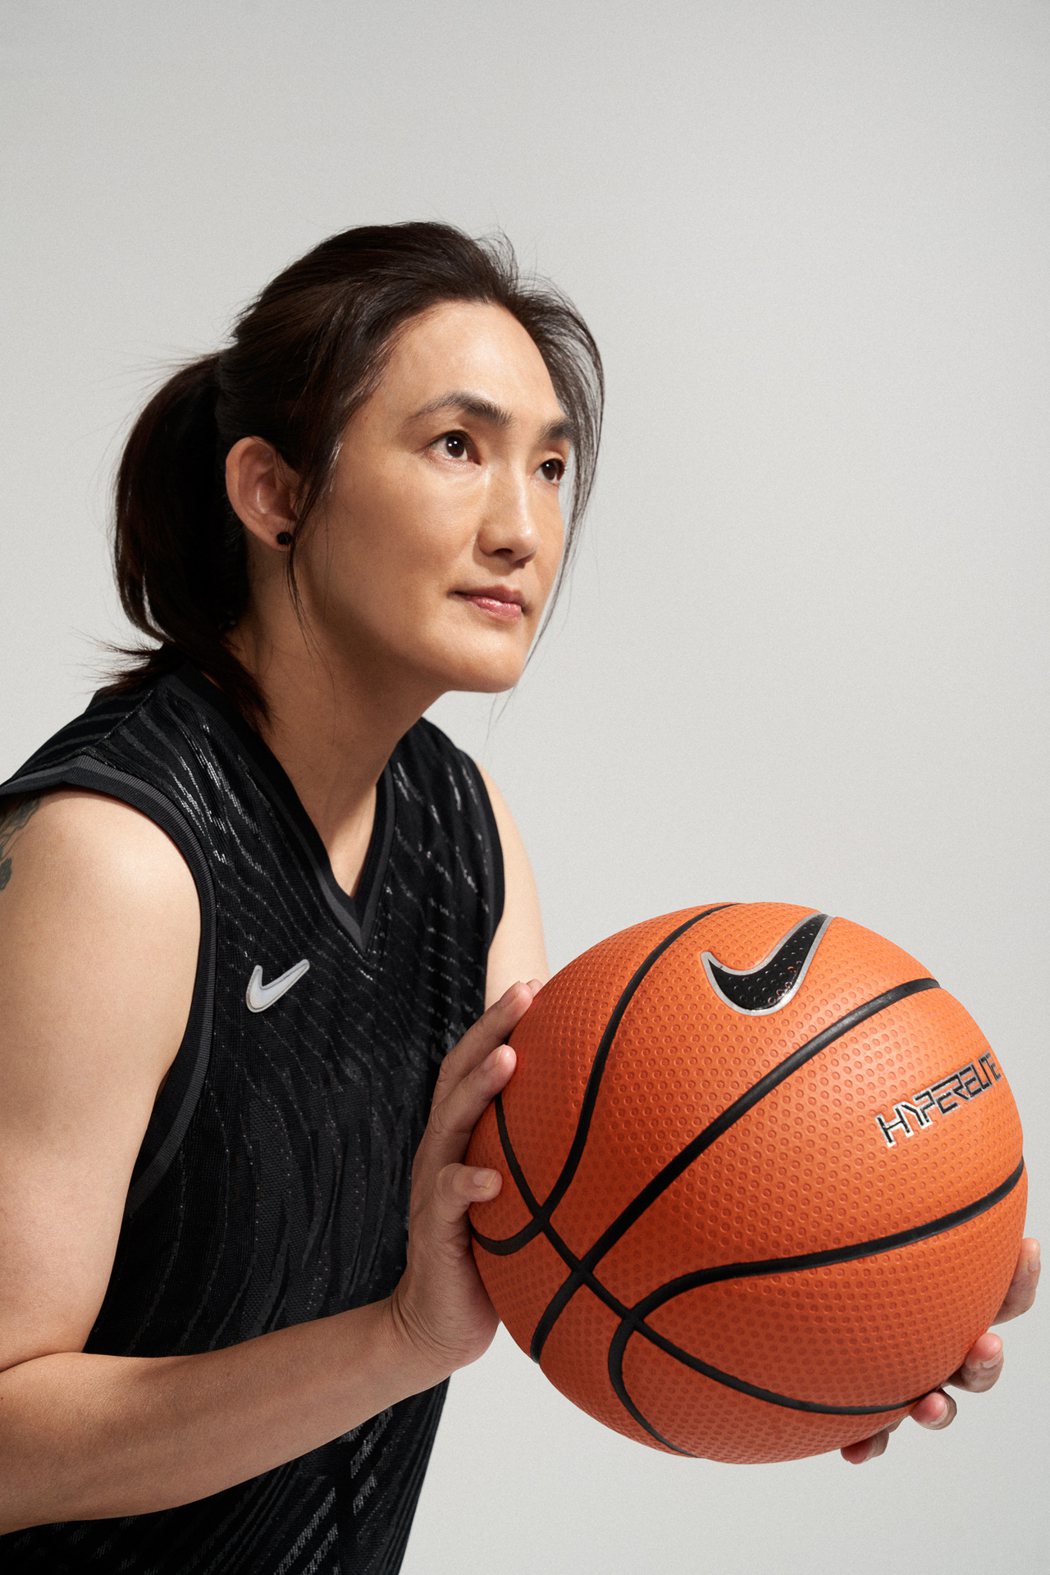 錢薇娟視籃球運動為一輩子志向，所以即便受傷，屆齡退休的前幾年，她還是會不斷提醒自...